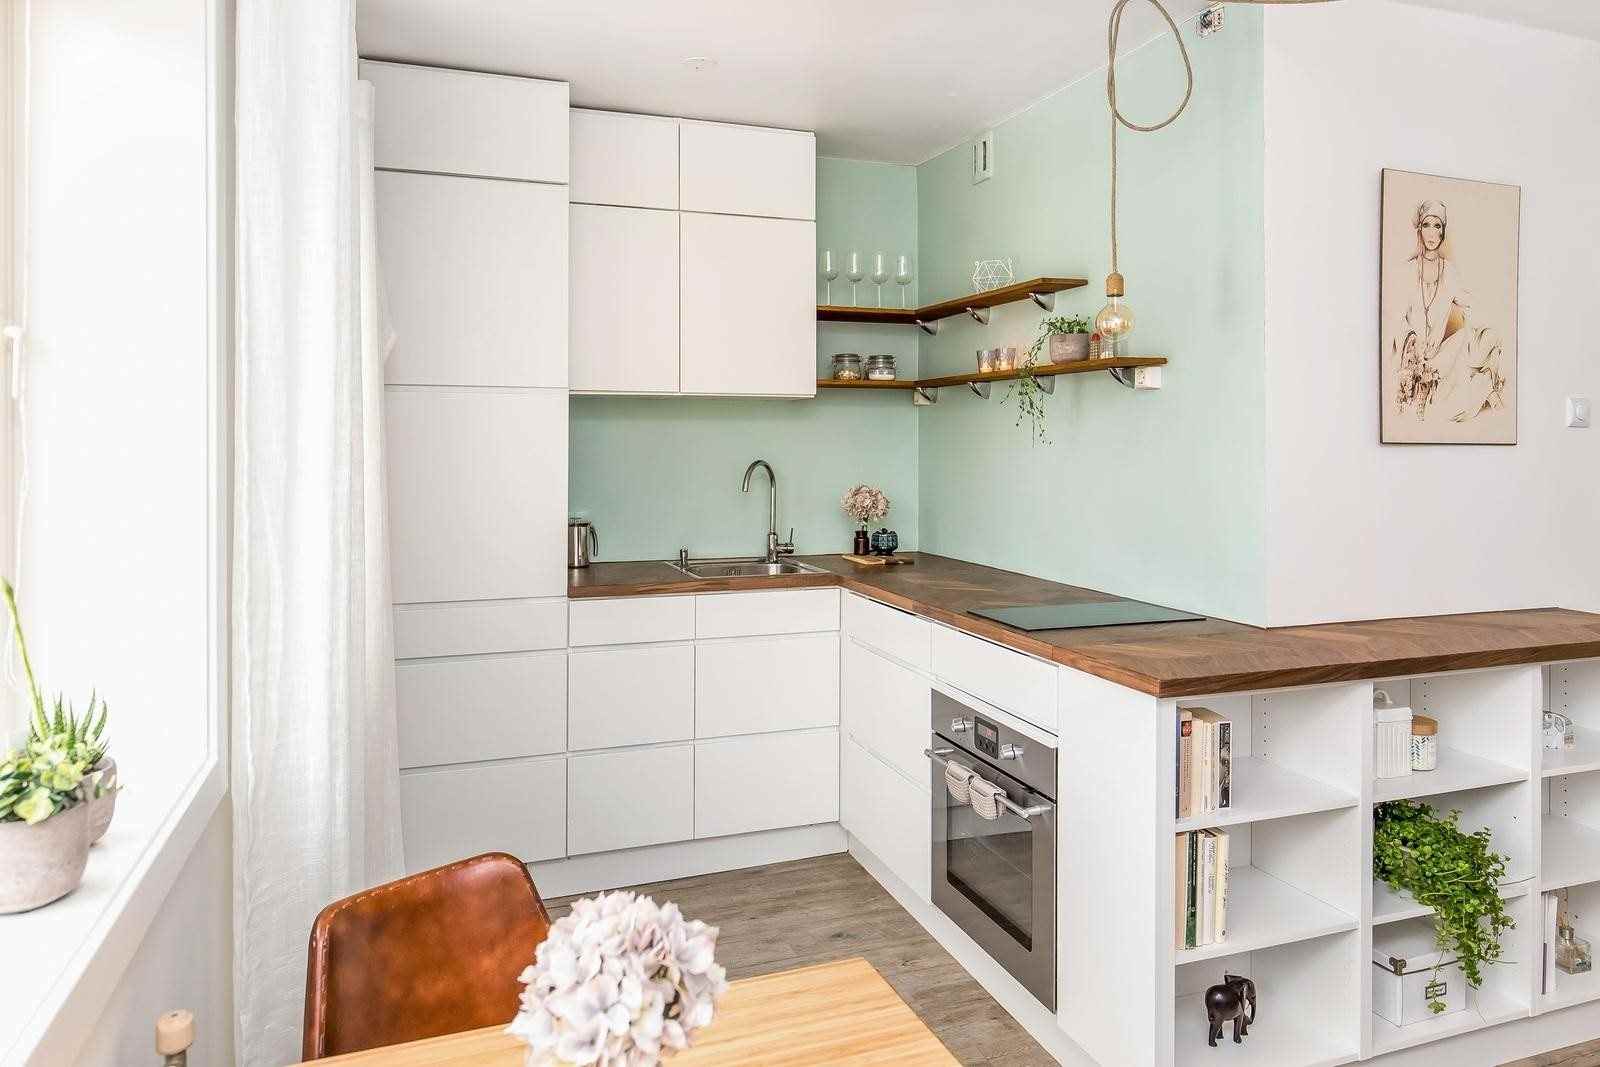 تستخدم زوايا المطبخ سطح عمل خشبي واجهات بيضاء بدون مقبض بلون أخضر فاتح للجدار